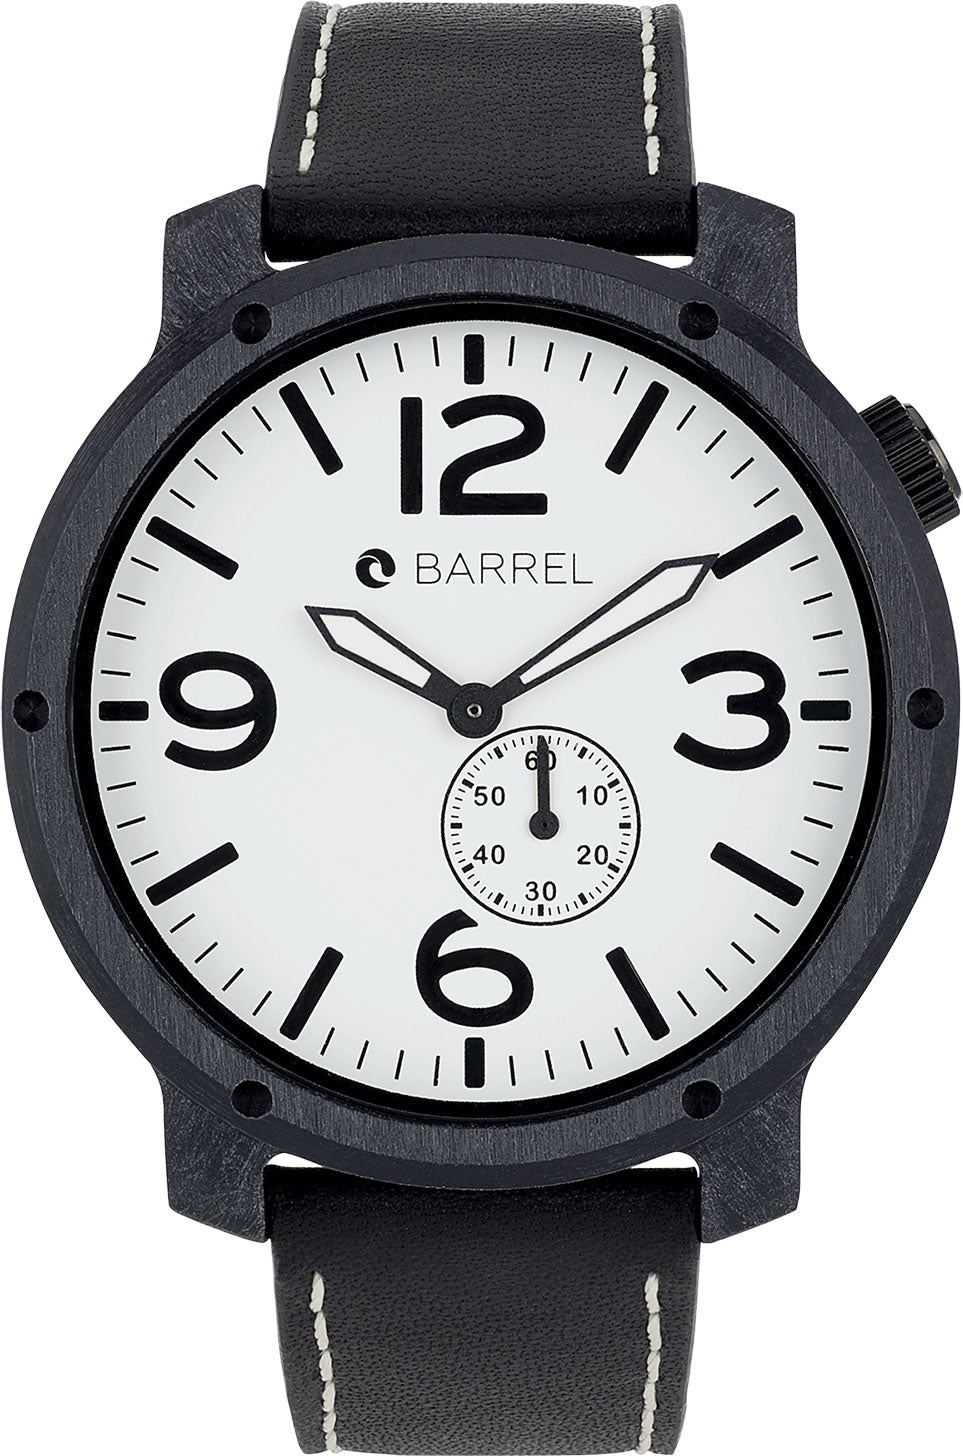 Barrel BA-4013-03 Hammock 48mm White dial watch